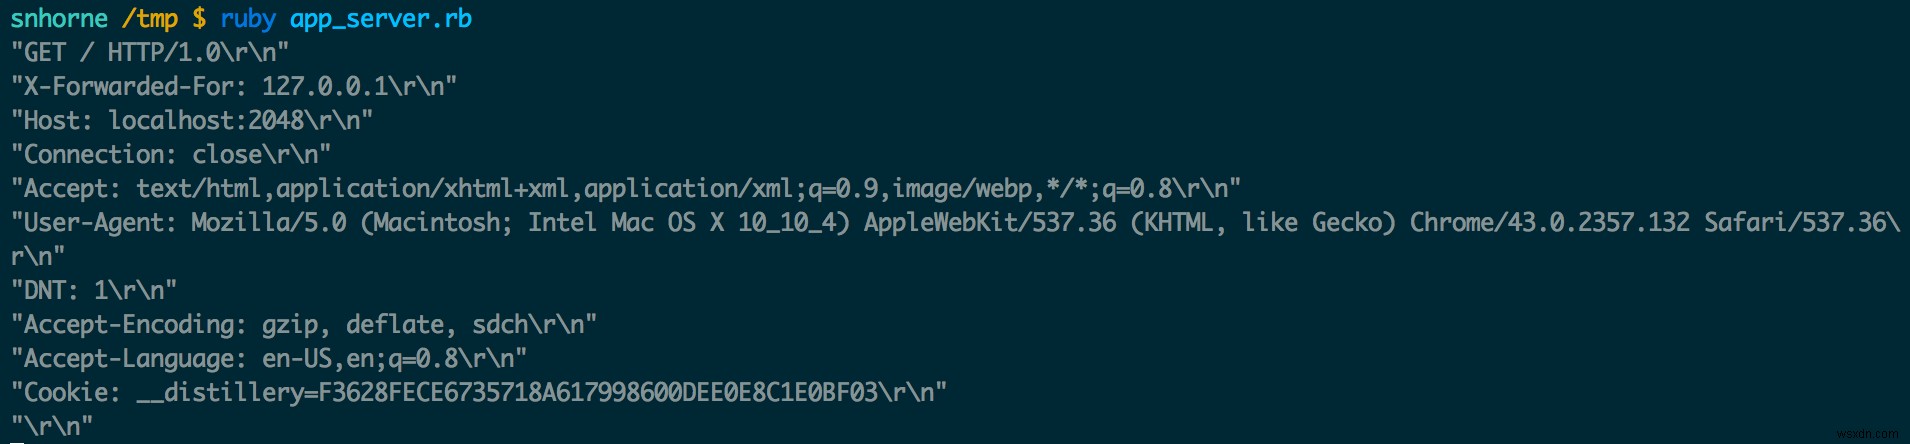 วิธีที่ส่วนหัว HTTP ถูกส่งผ่านจาก nginx ไปยังแอป Ruby ของคุณ 